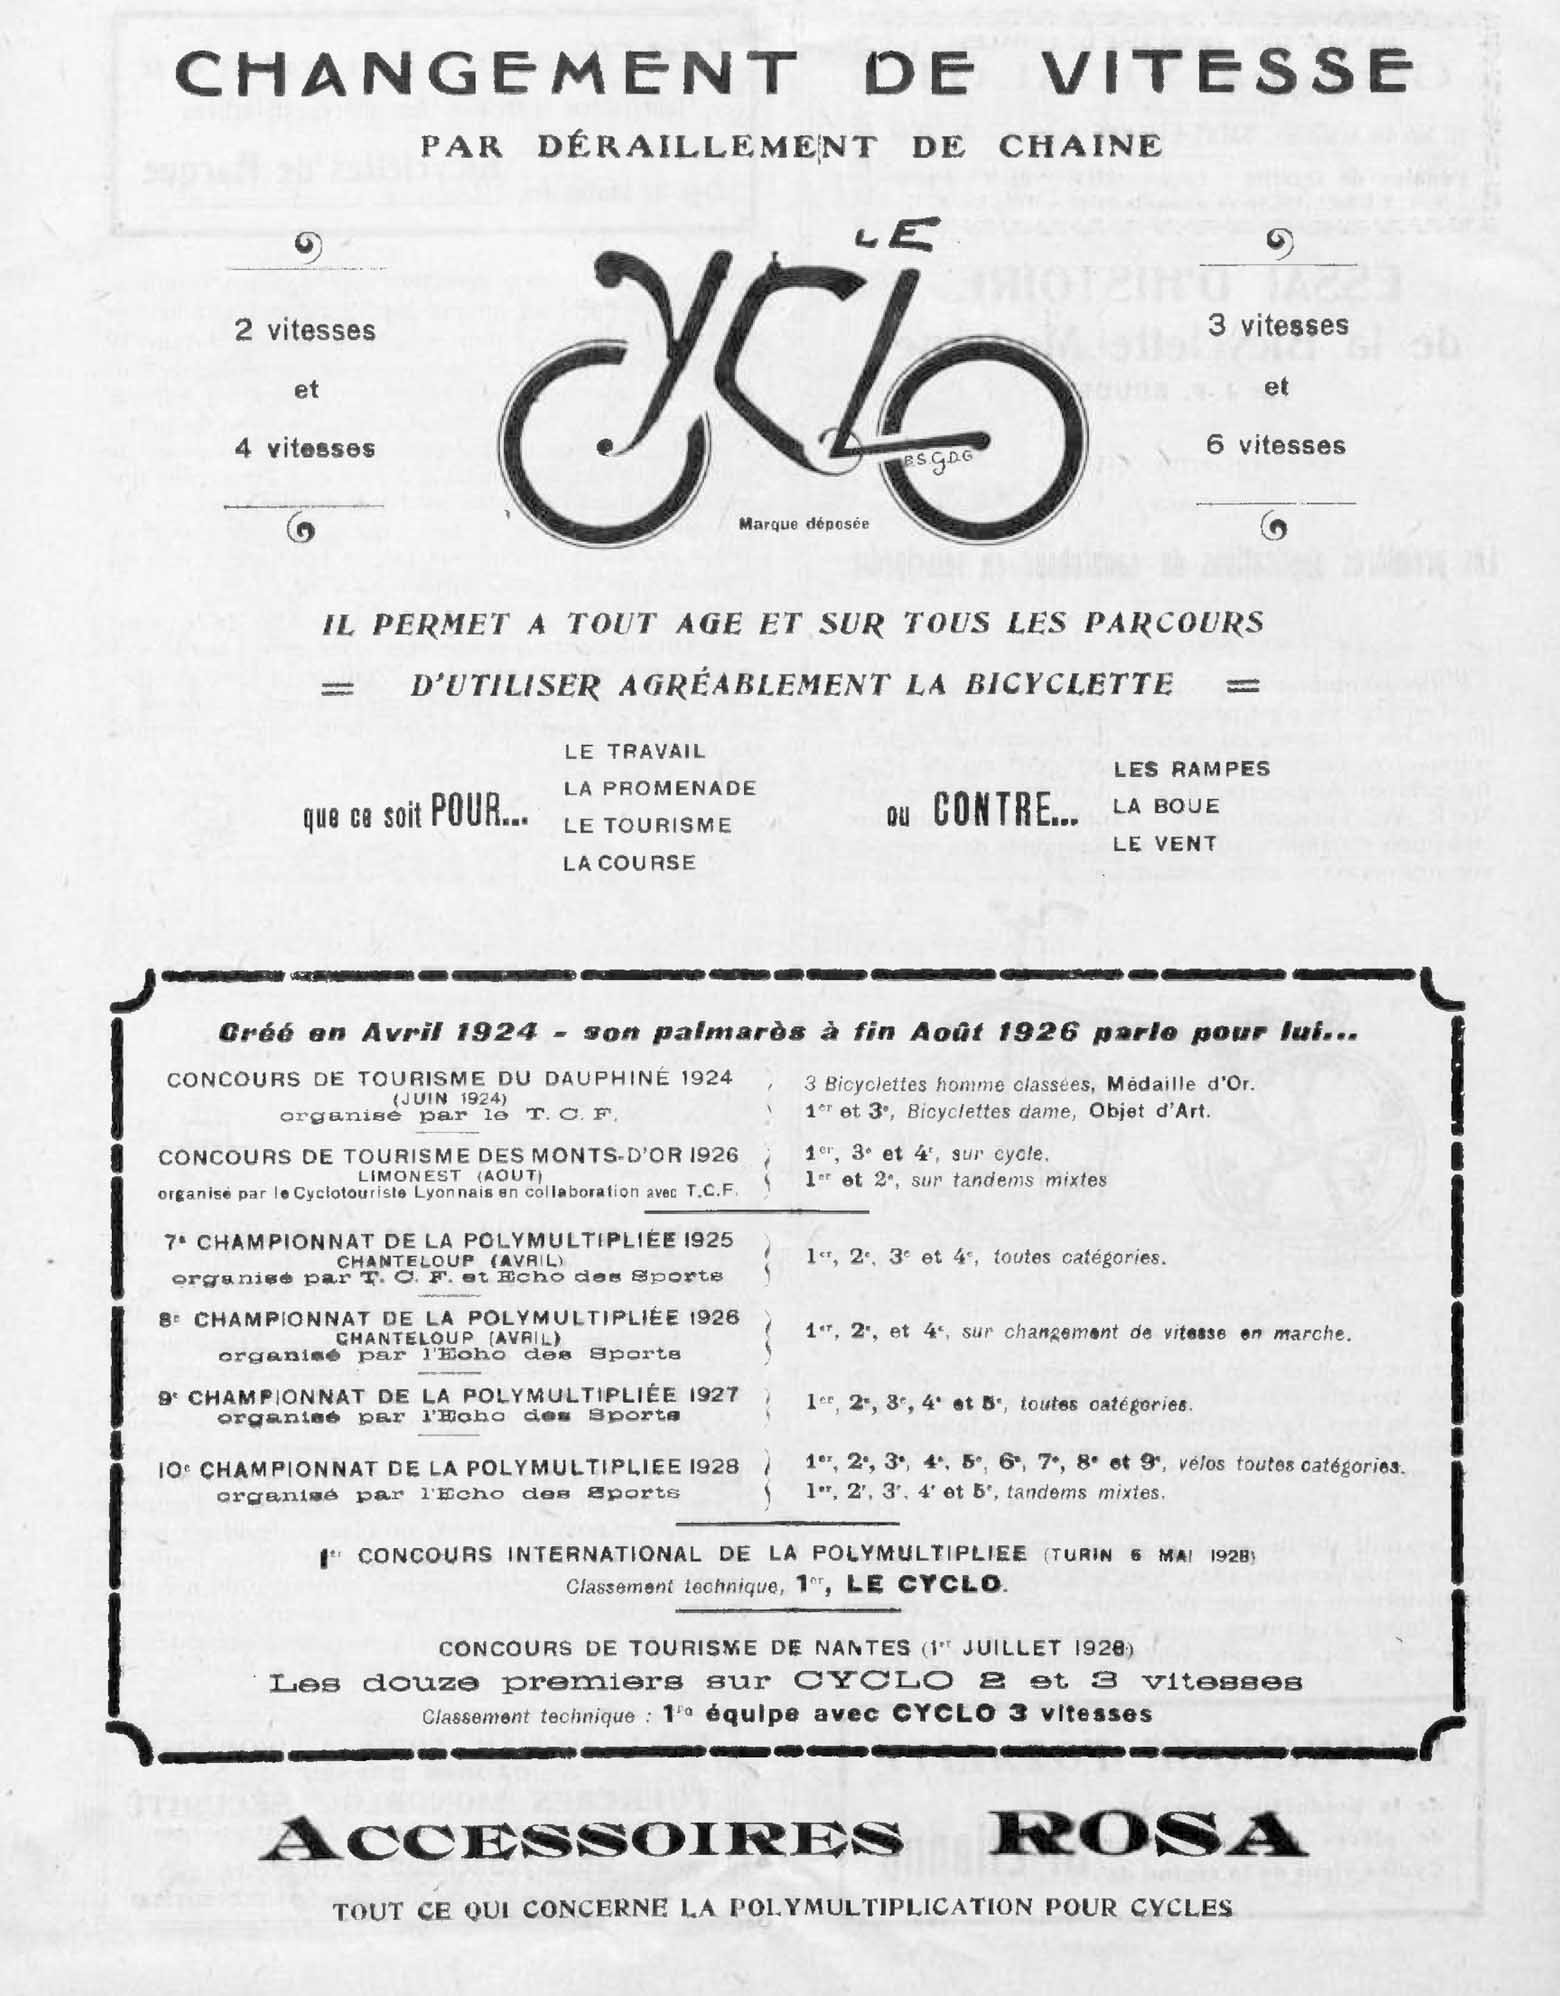 L'Industrie des Cycles et Automobiles July 1928 - Cyclo advert main image